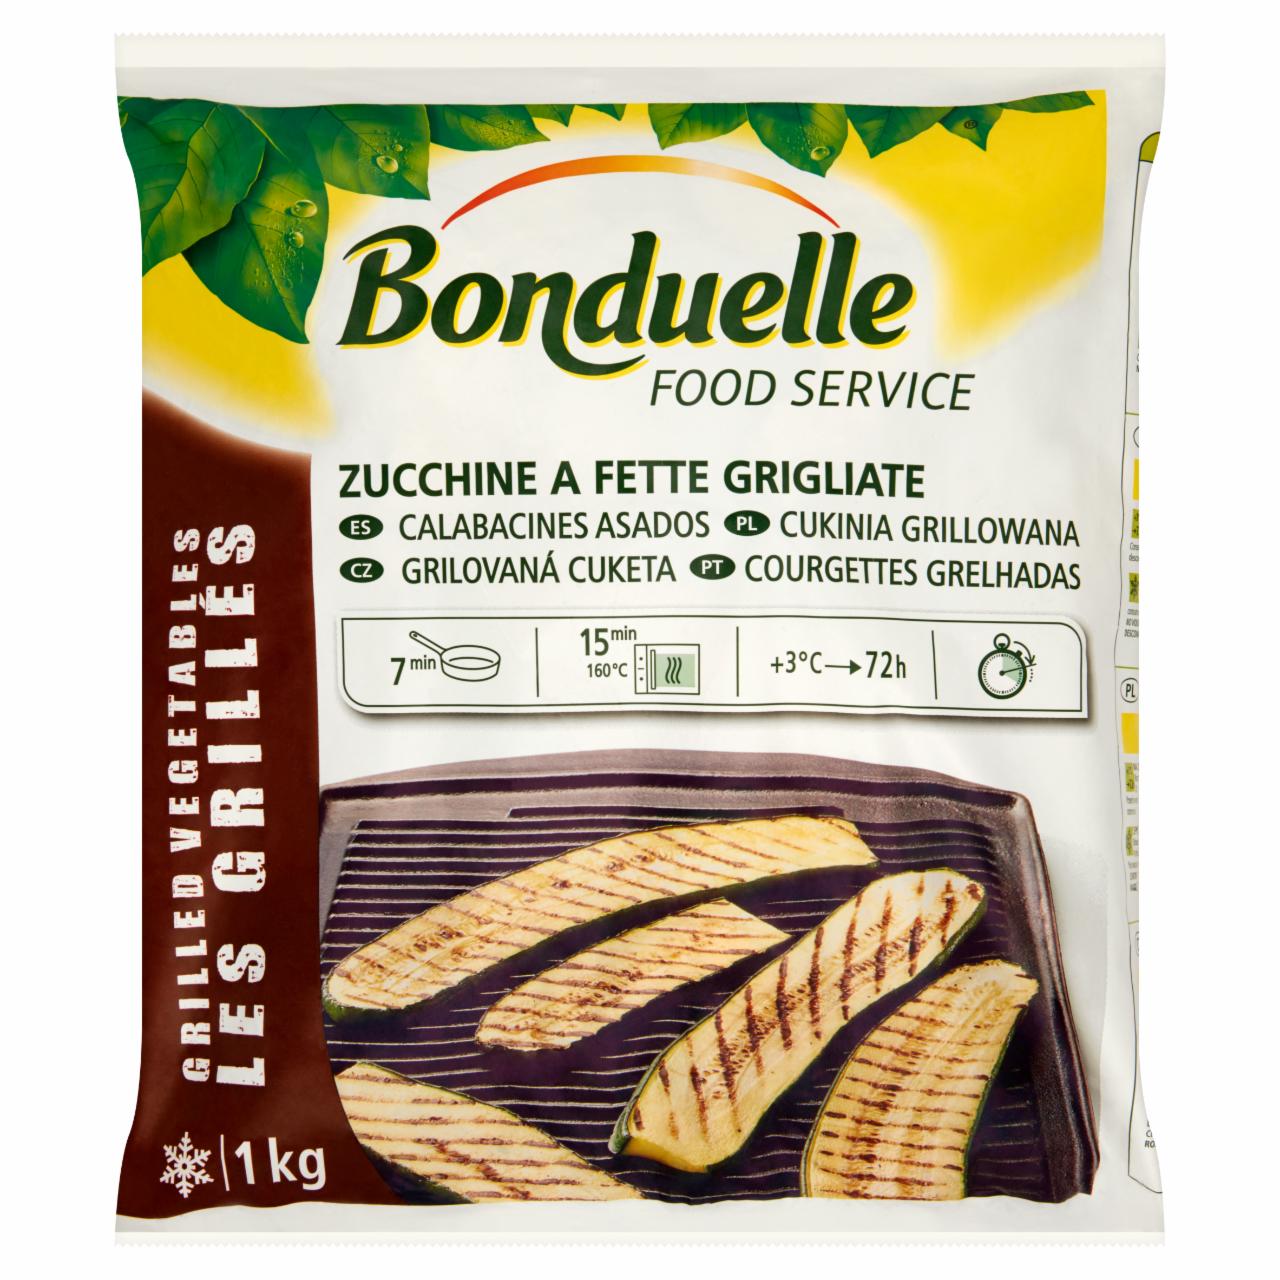 Képek - Bonduelle Food Service gyorsfagyasztott grillezett cukkini szeletek 1 kg